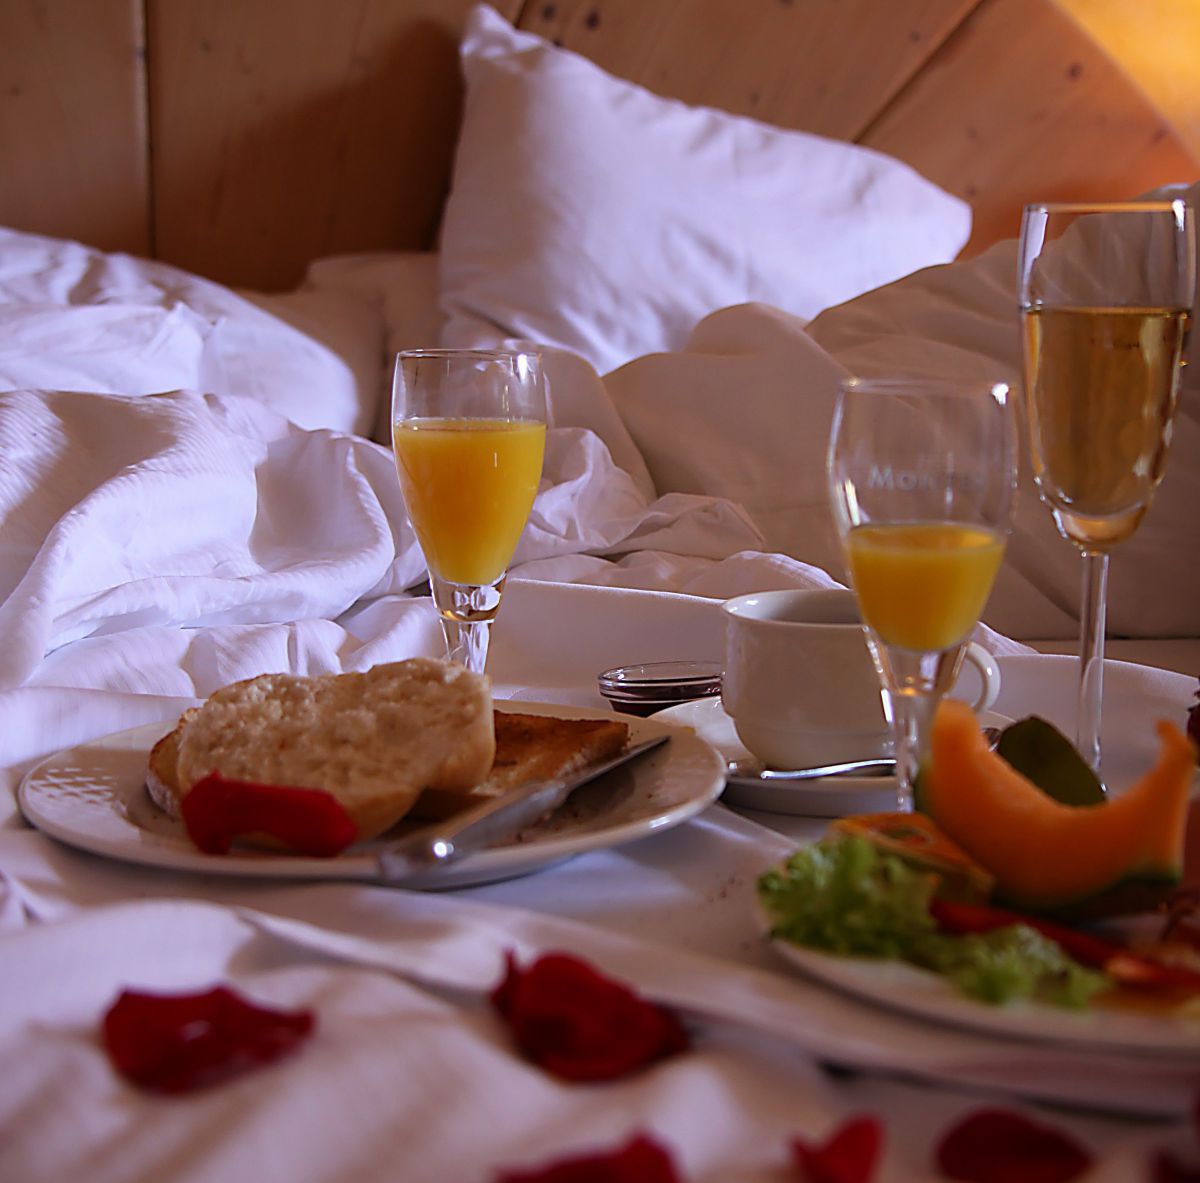 Teller mit Semmel, Gläser mit Orangensaft ein Glas Sekt, Rosenblätter im Bett.